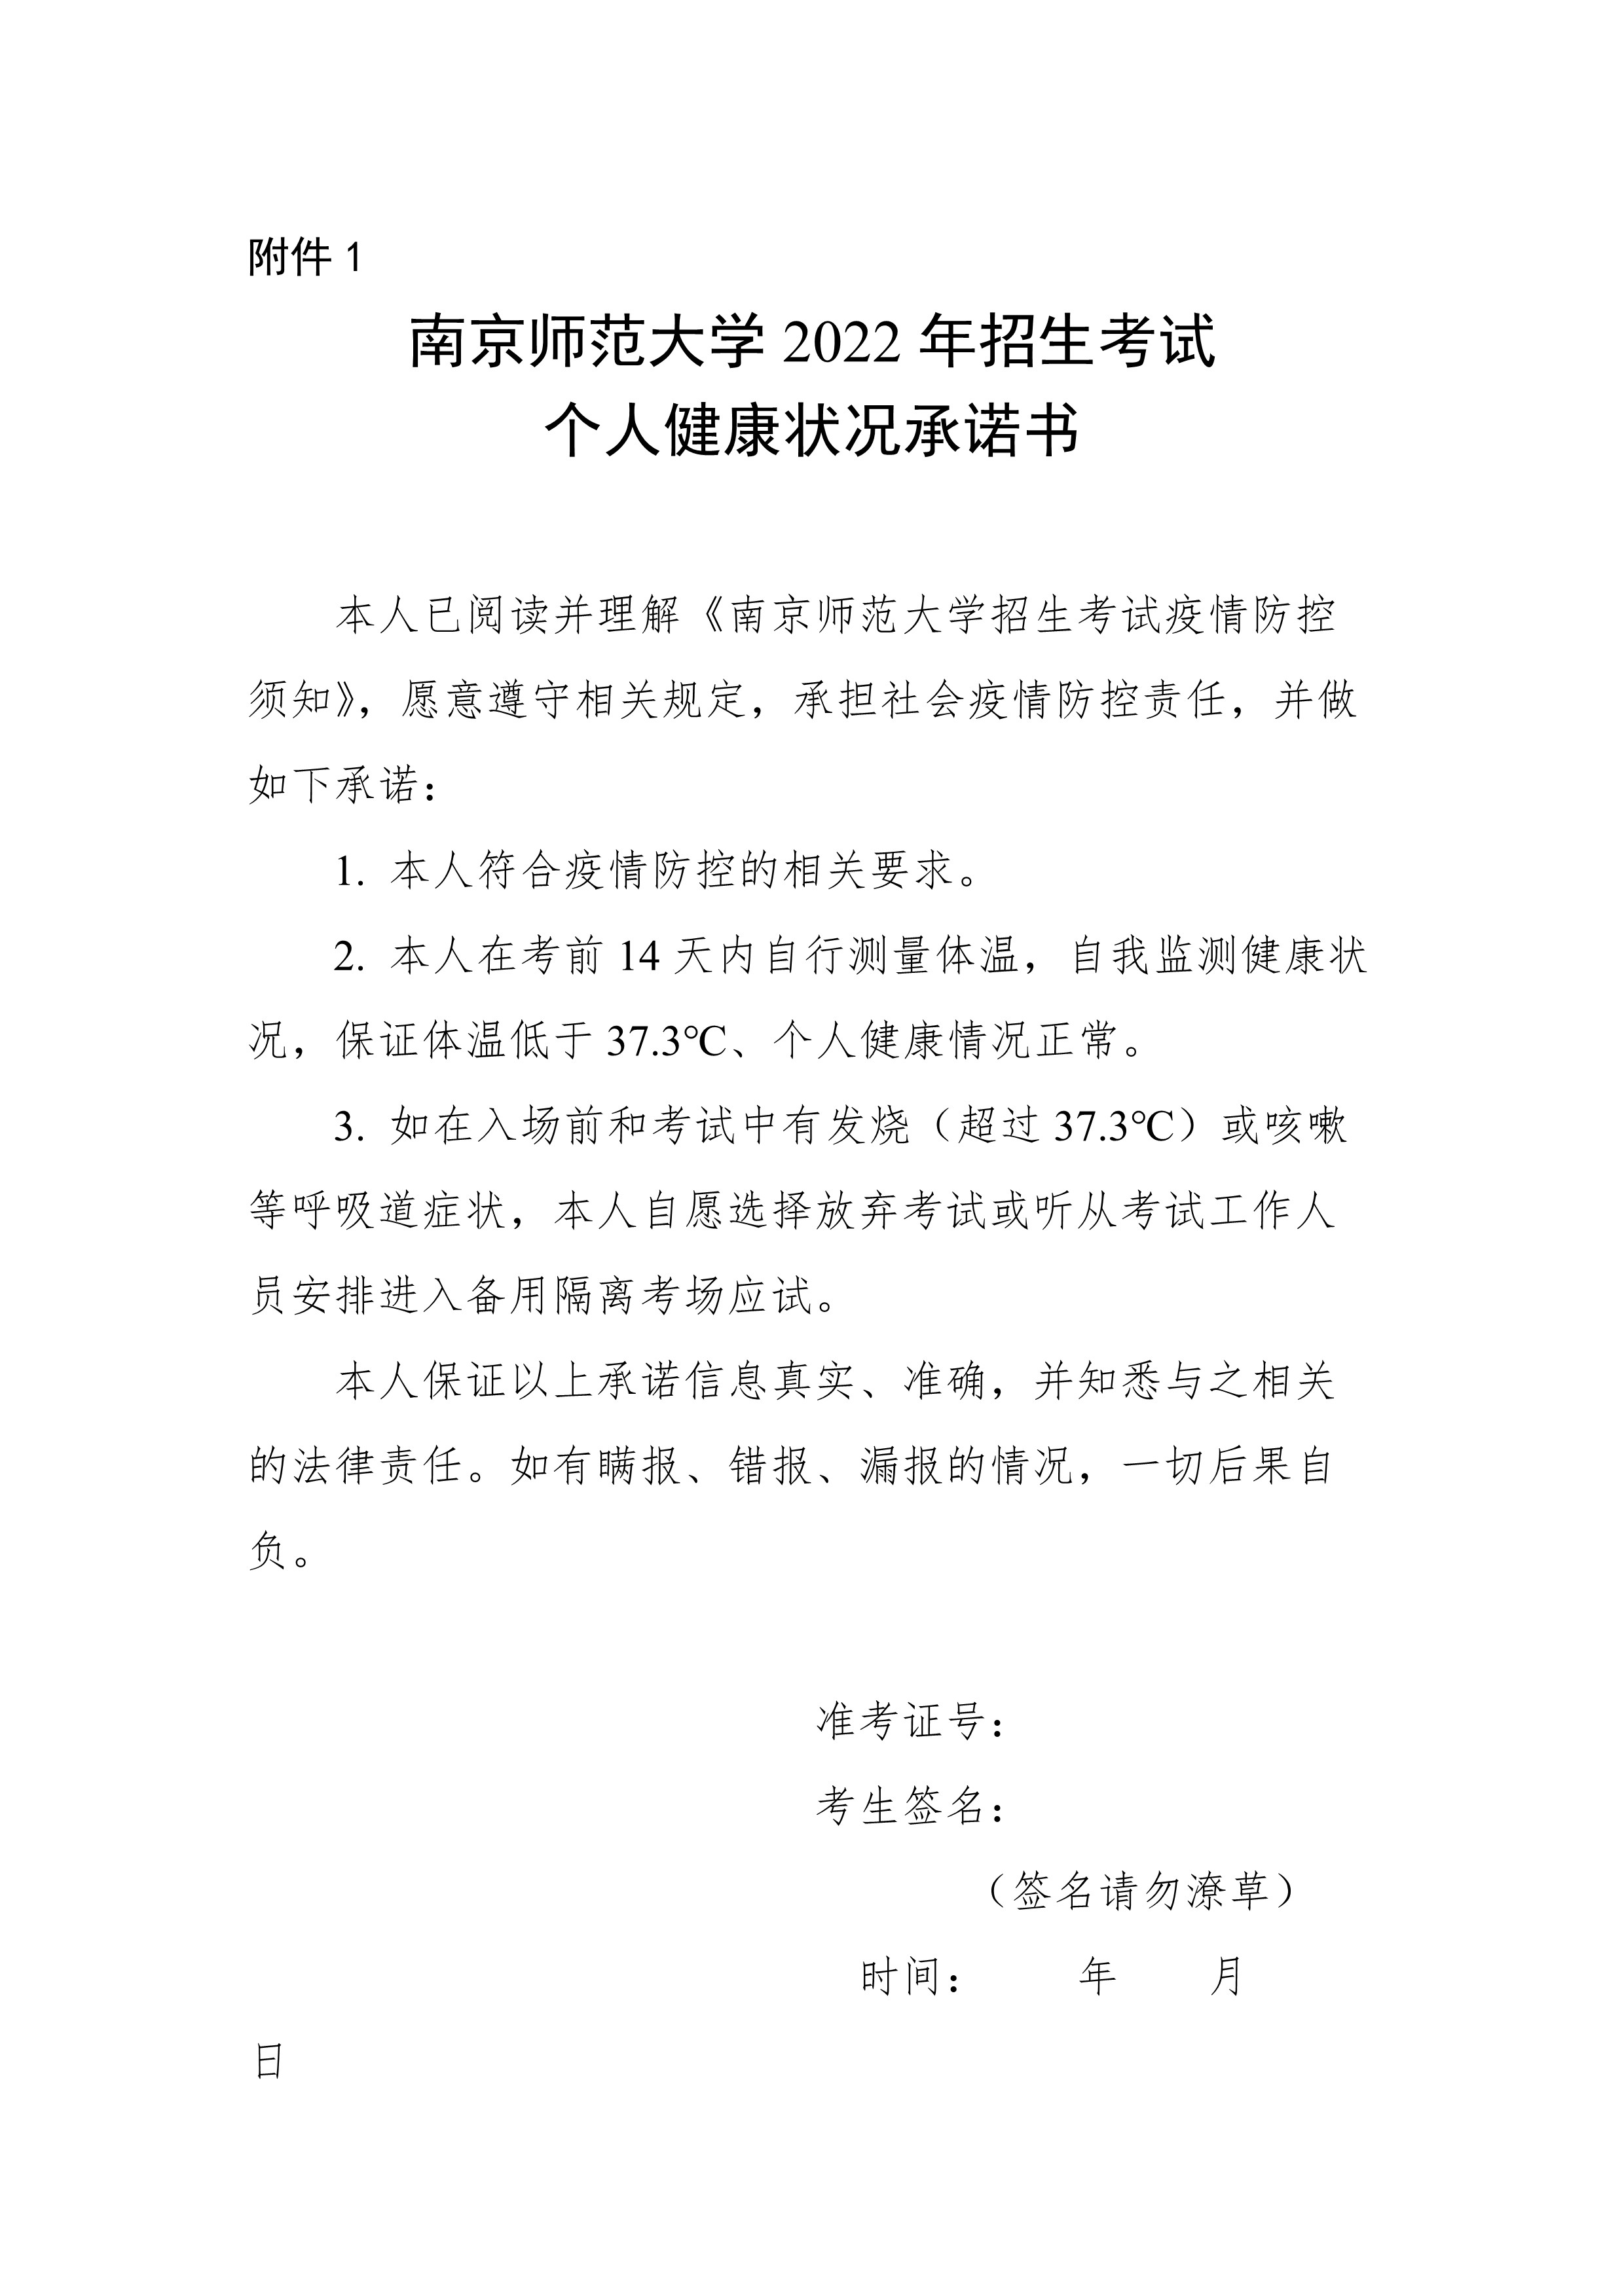 9986_附件1：南京师范大学2022年招生考试个人健康状况承诺书_1.jpg